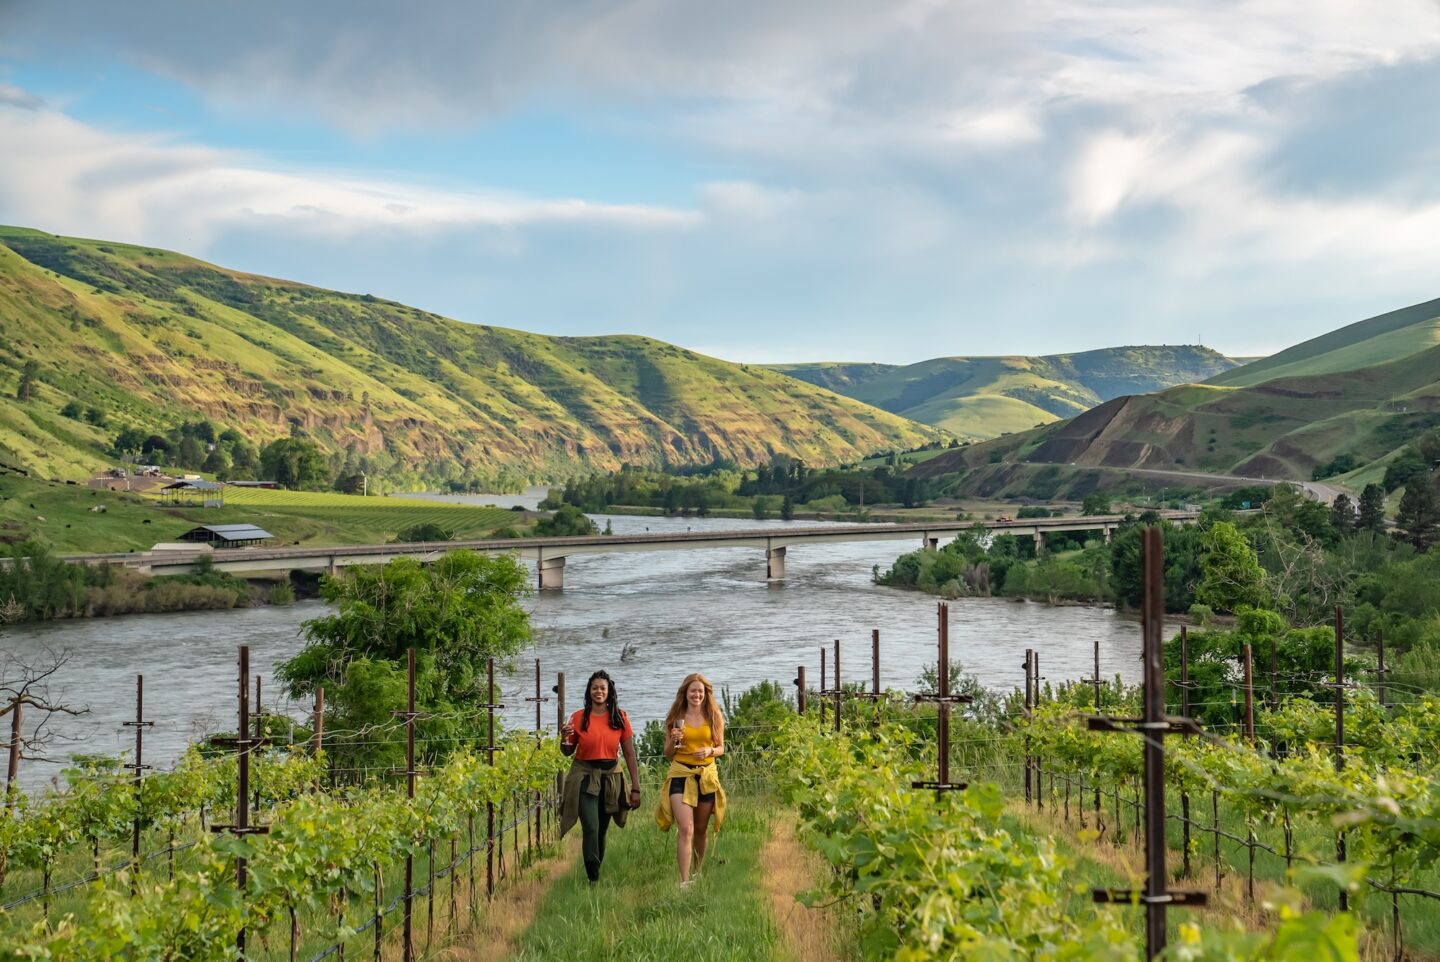 Rivaura vineyard view with two women walking